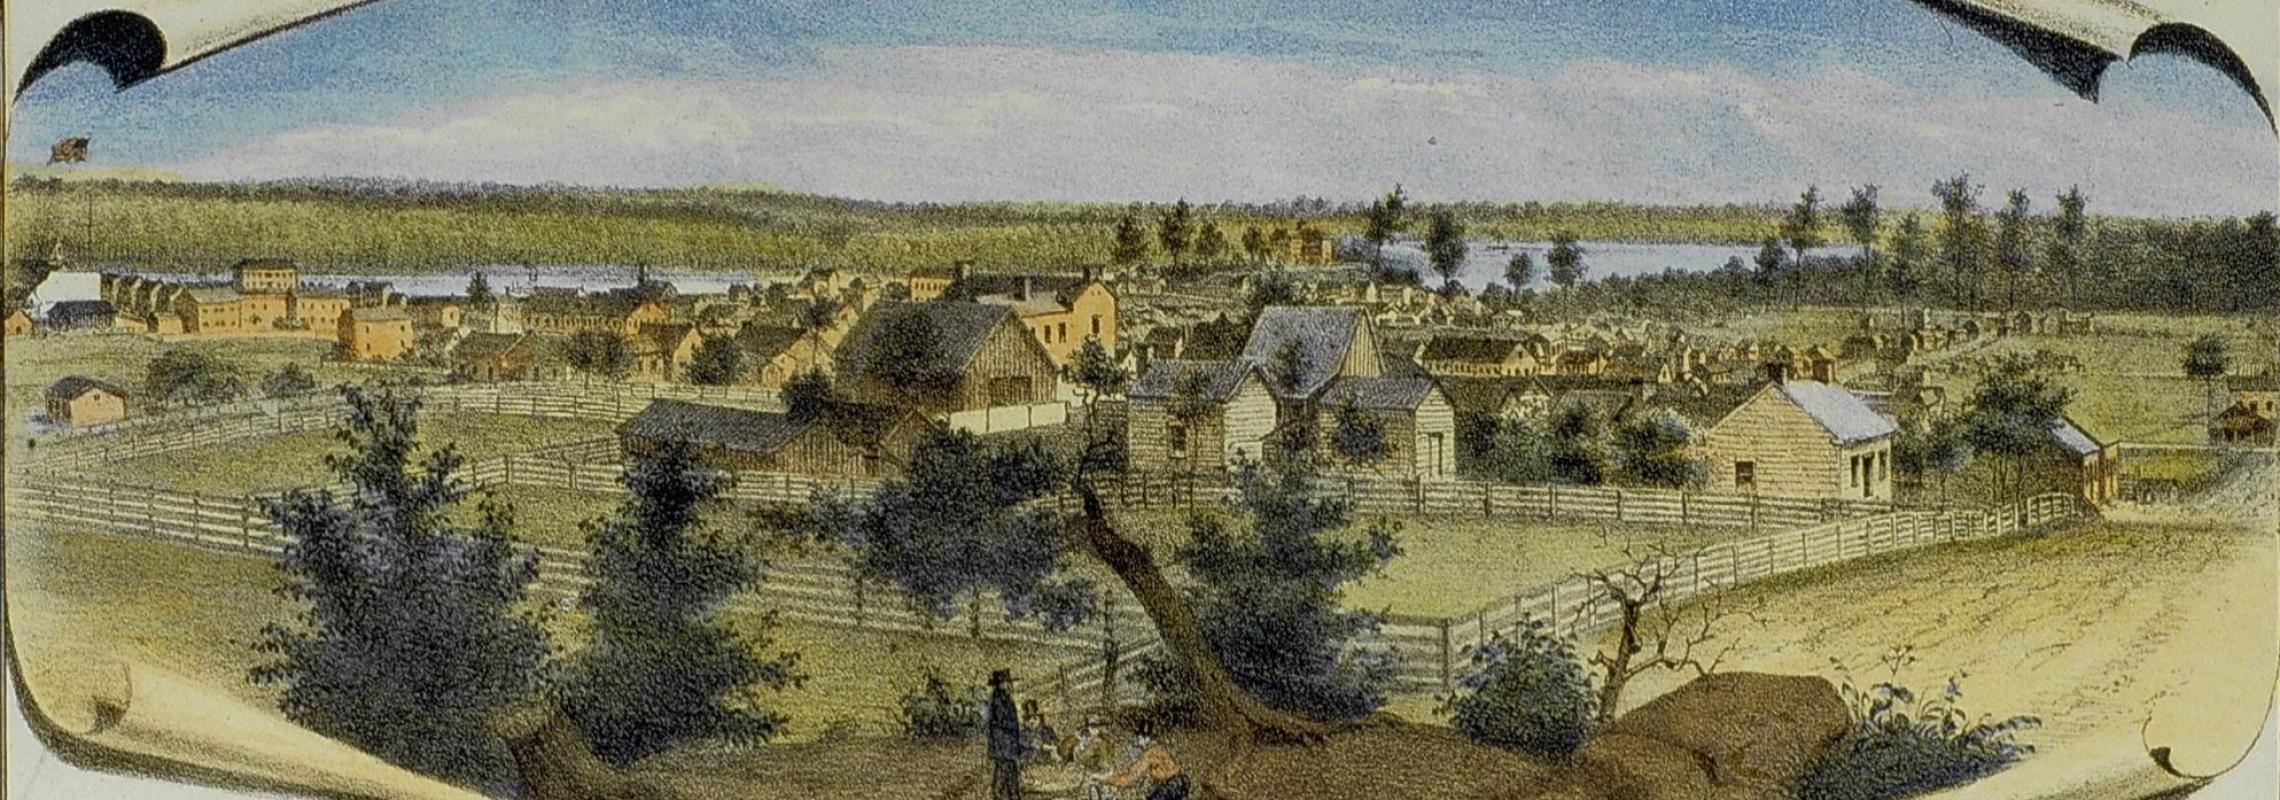 Cape Girardeau in 1858